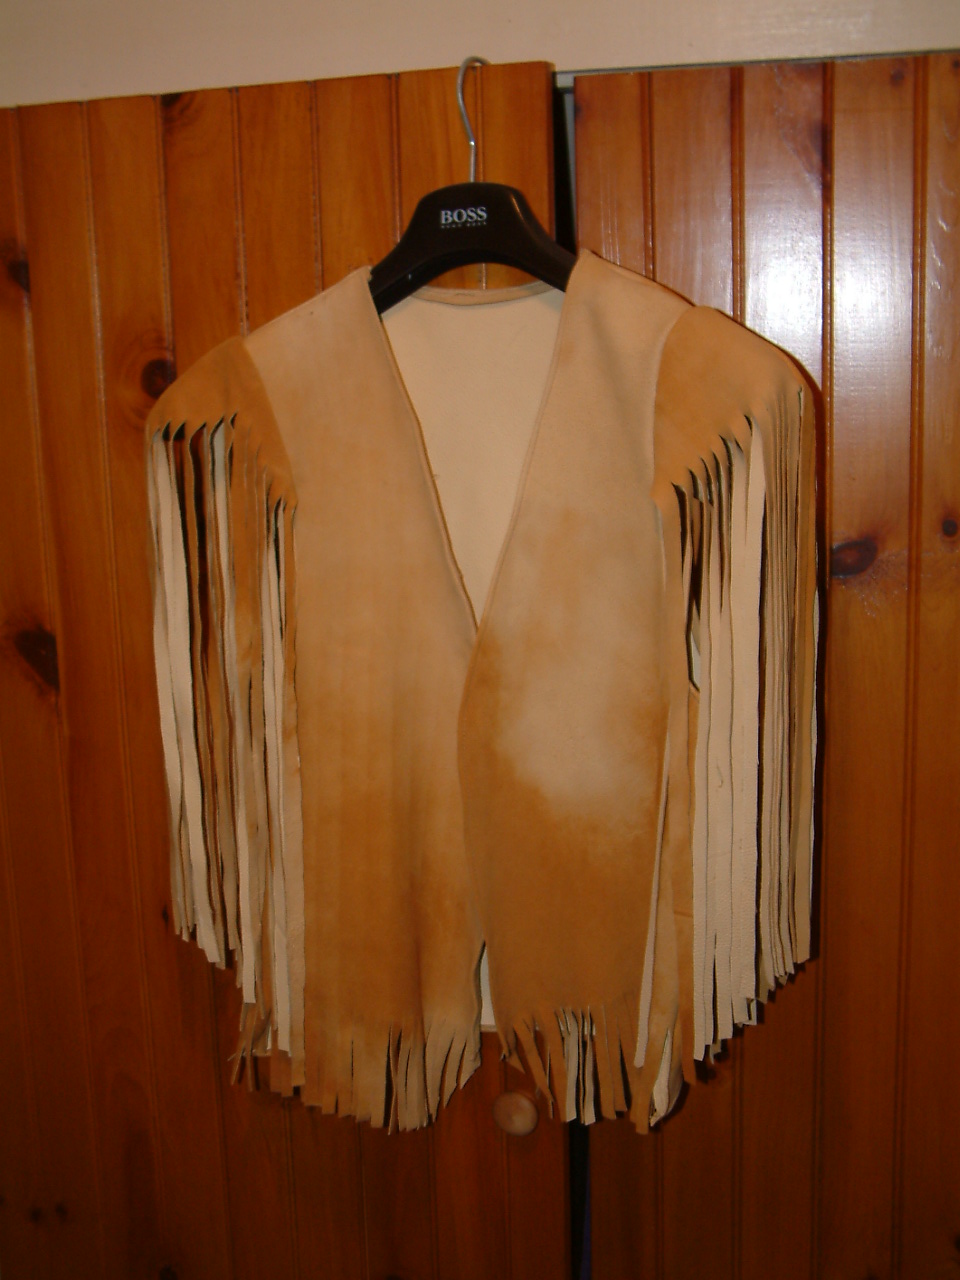 image of handmade doeskin vest on clothes hanger